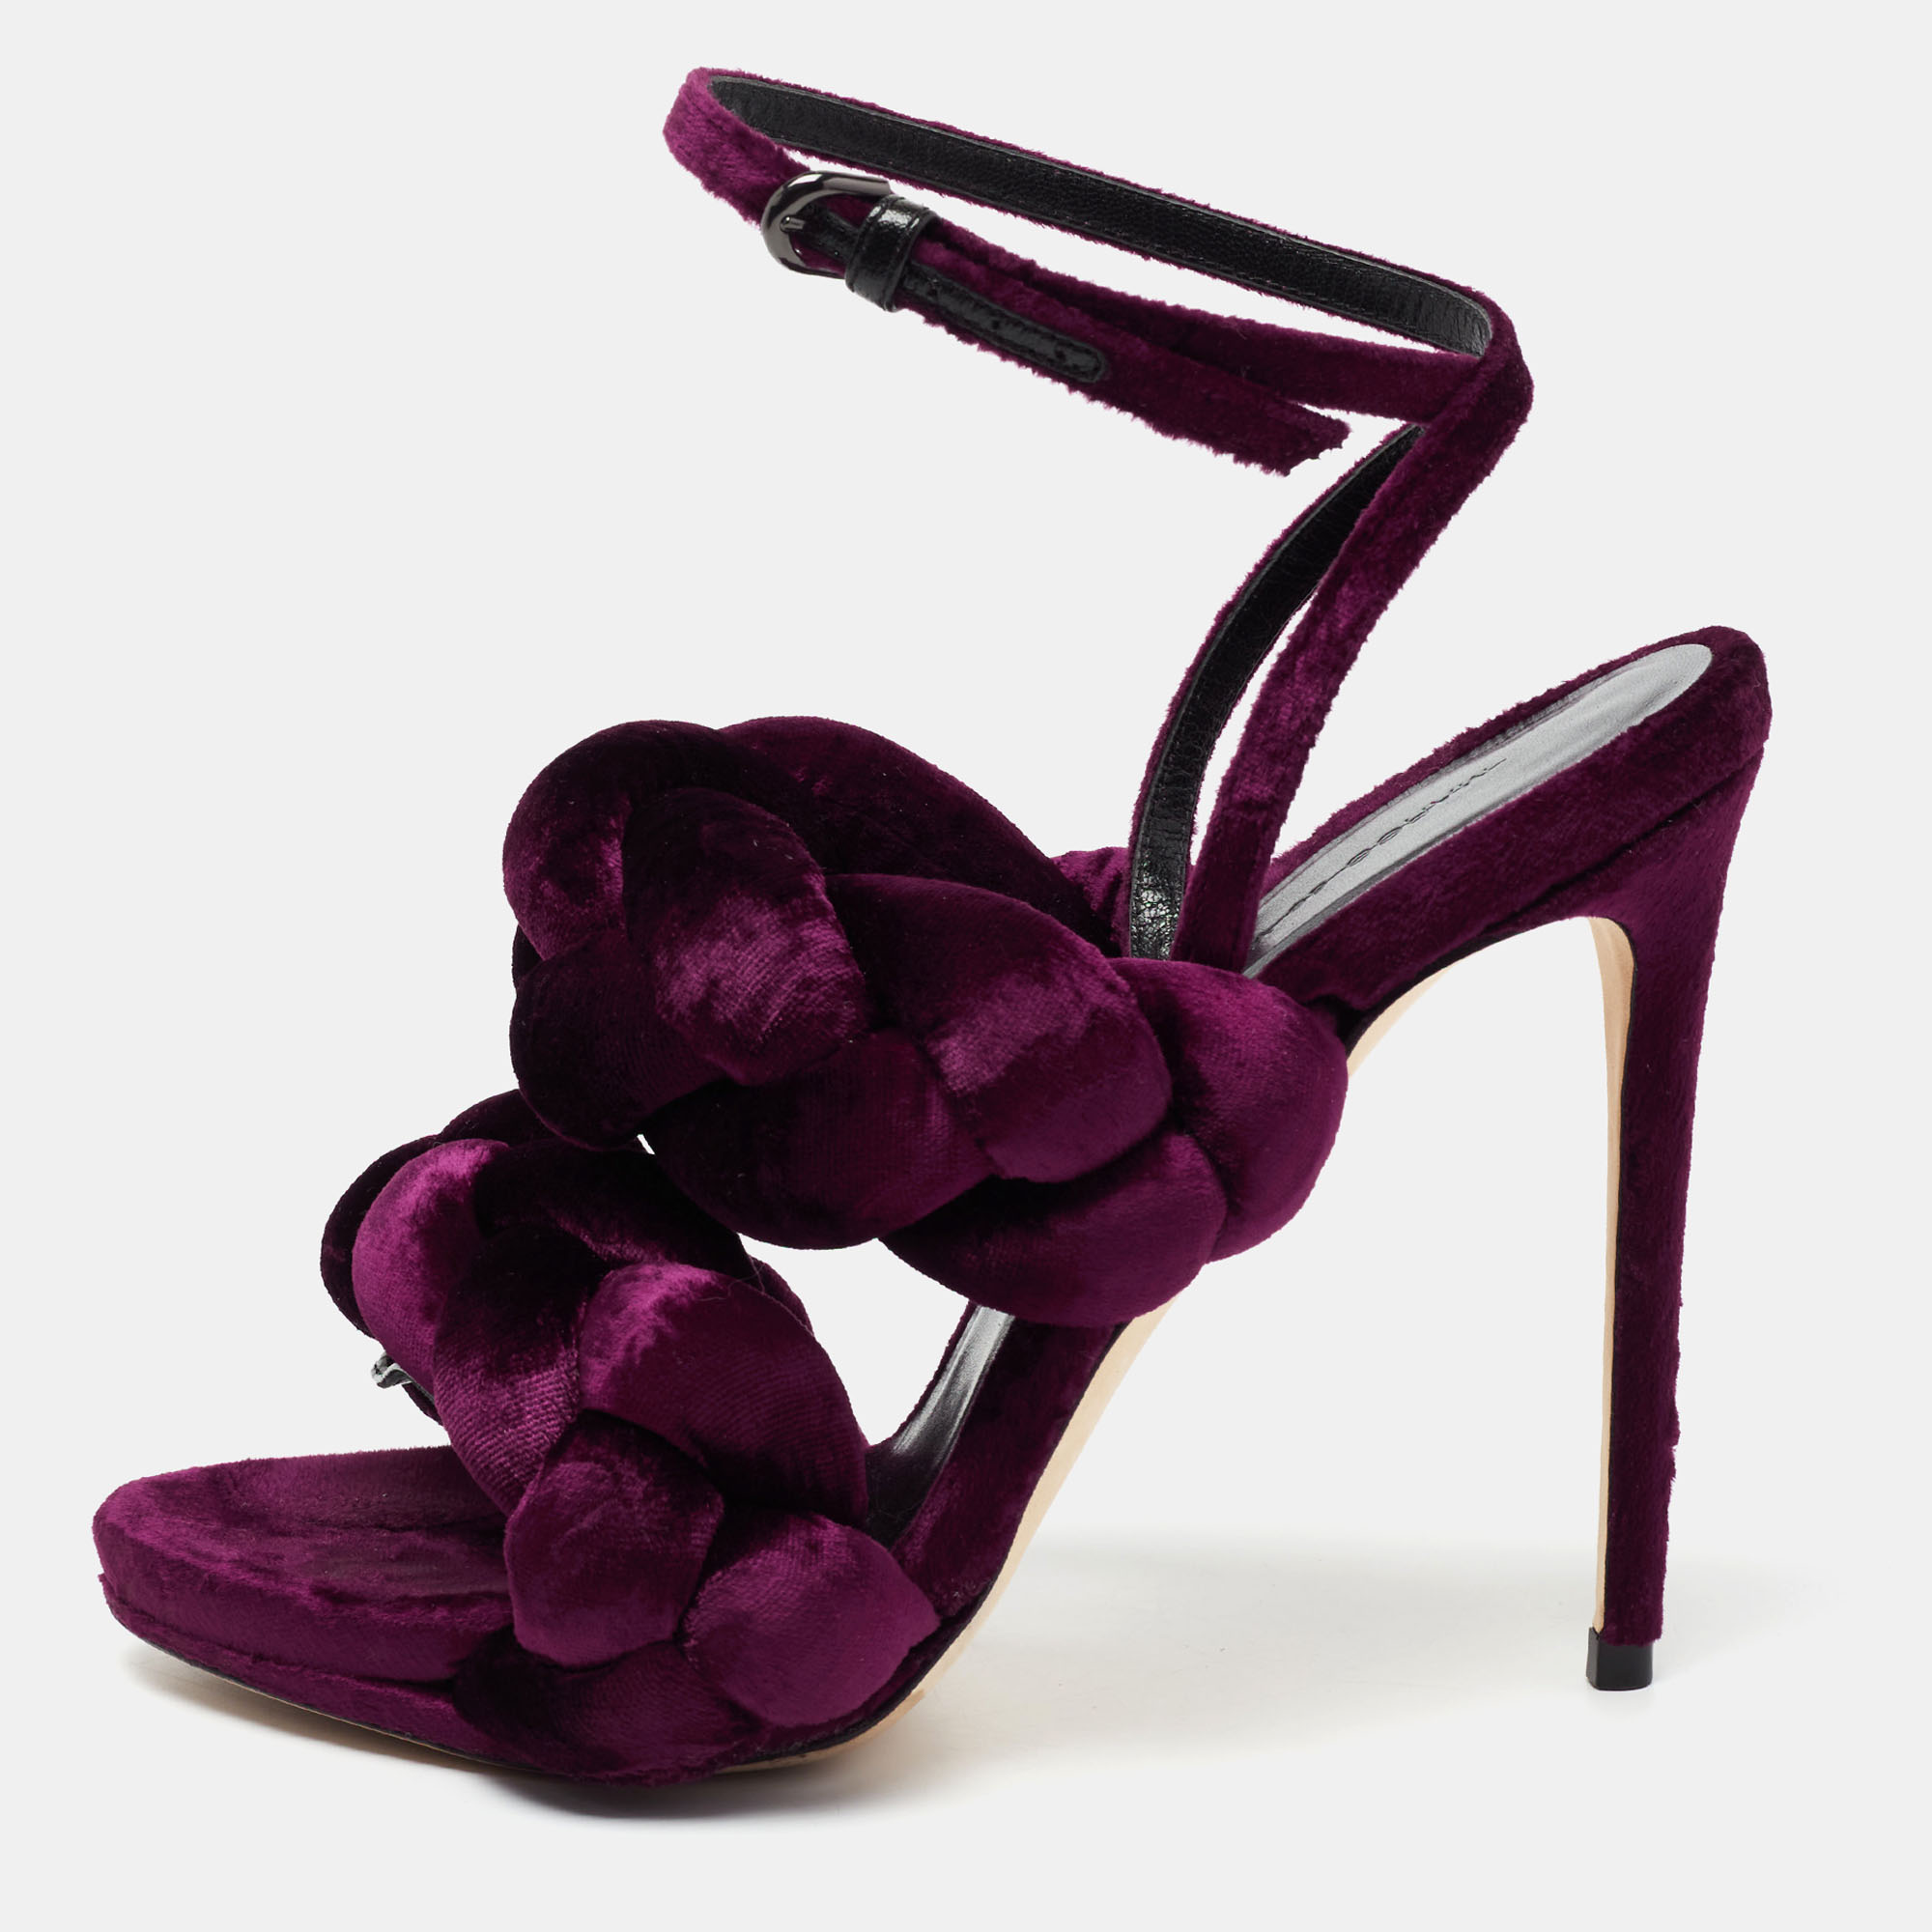 Marco de vincenzo Purple Velvet Braided Ankle Strap Sandals Size 39